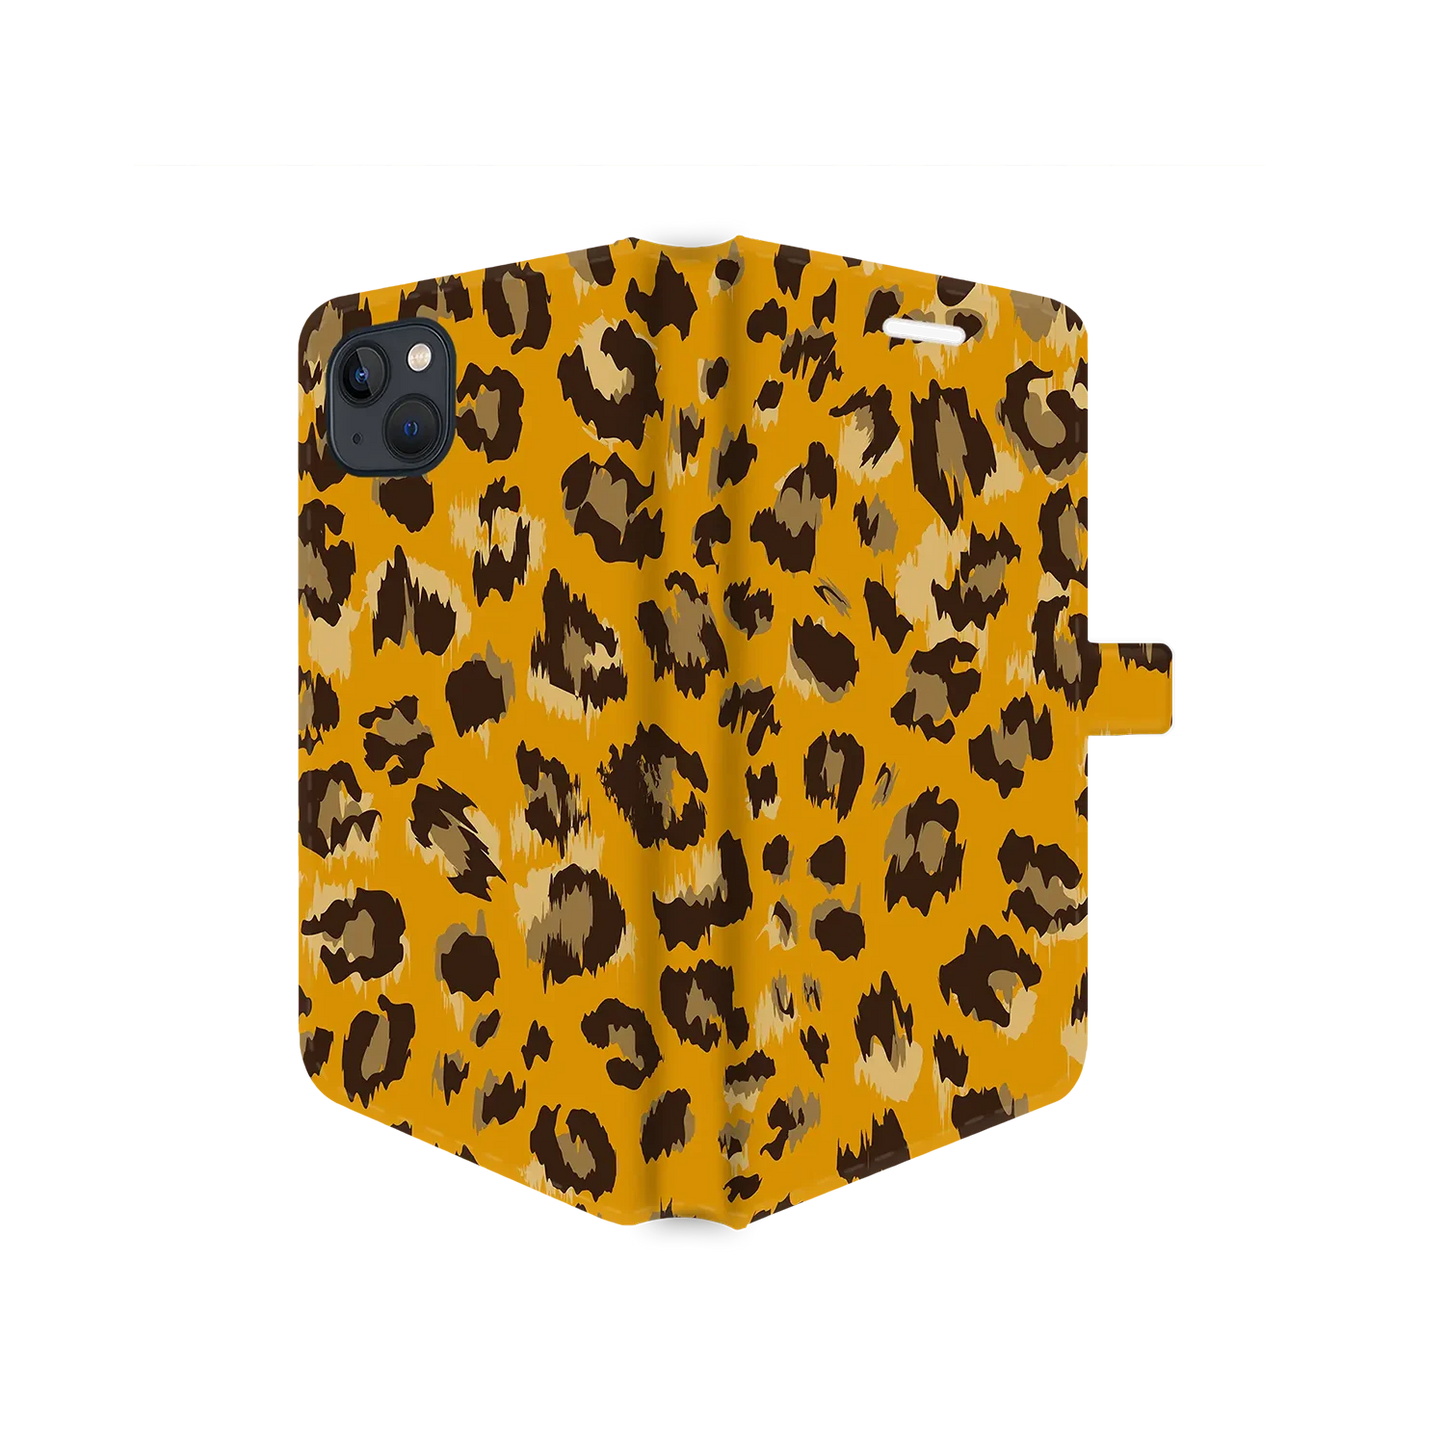 Impresión de guepardo salvaje - Carcasa personalizada iPhone